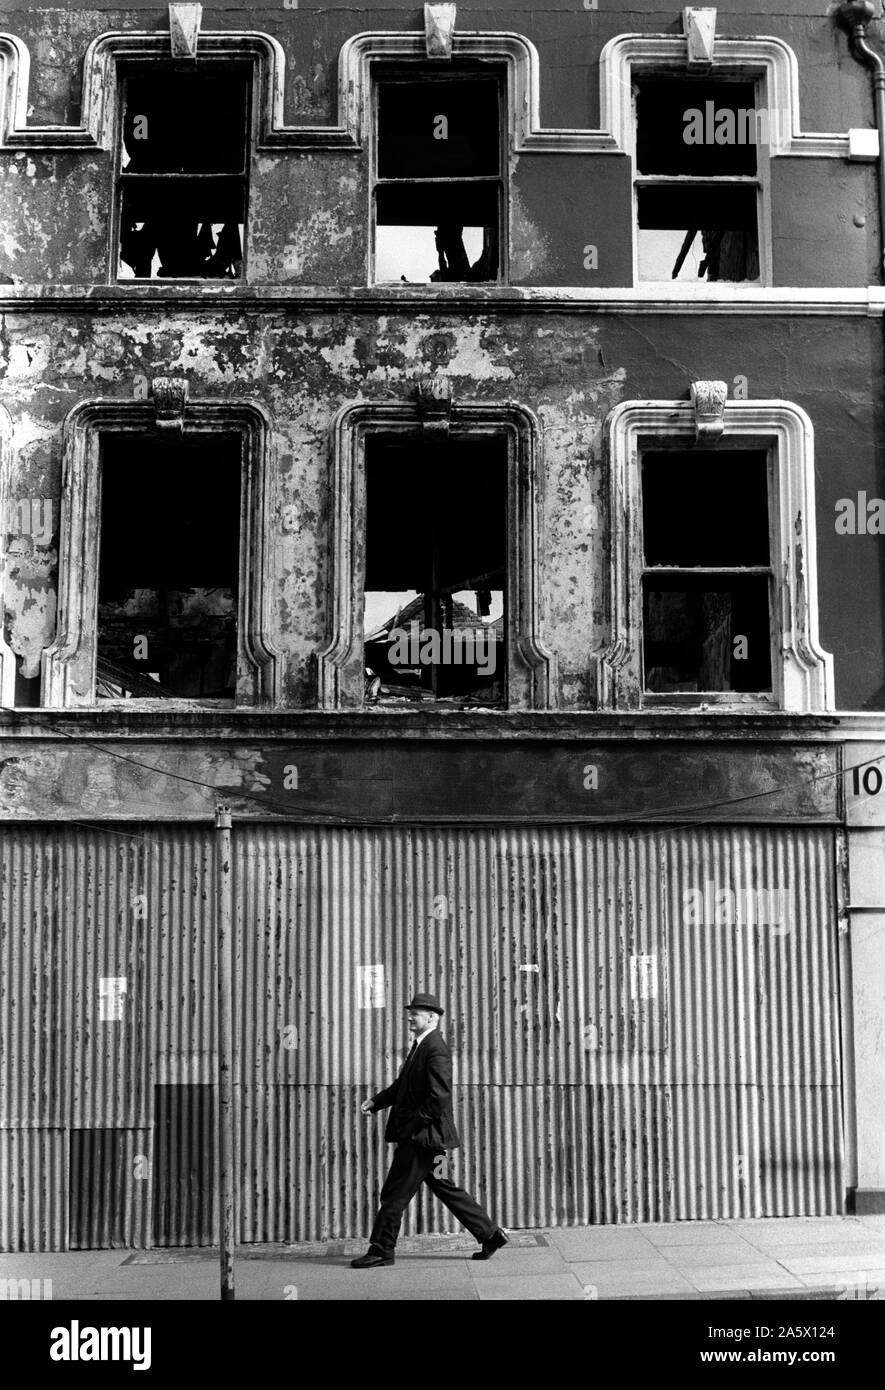 Derry in Nordirland Londonderry. 70er Jahre. Ausgebrannt Benzin bombardiert Stadtzentrum Geschäfte Gebäude. Die Mühen sektiererische Gewalt 1979 UK HOMER SYKES. Stockfoto